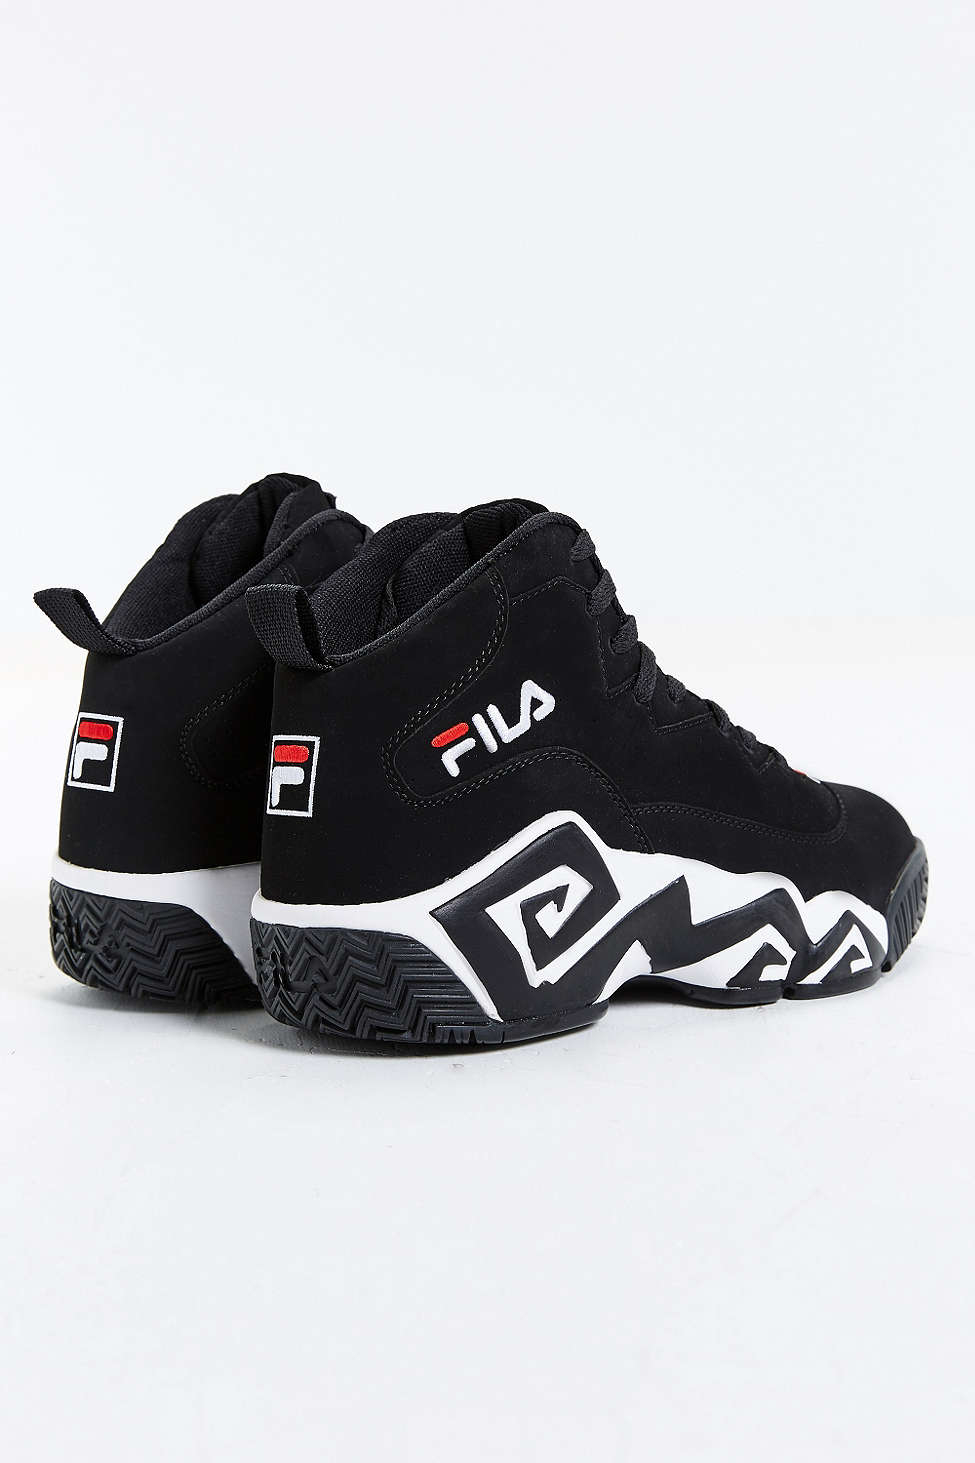 Fila Suede Mb Sneaker in Black for Men - Lyst